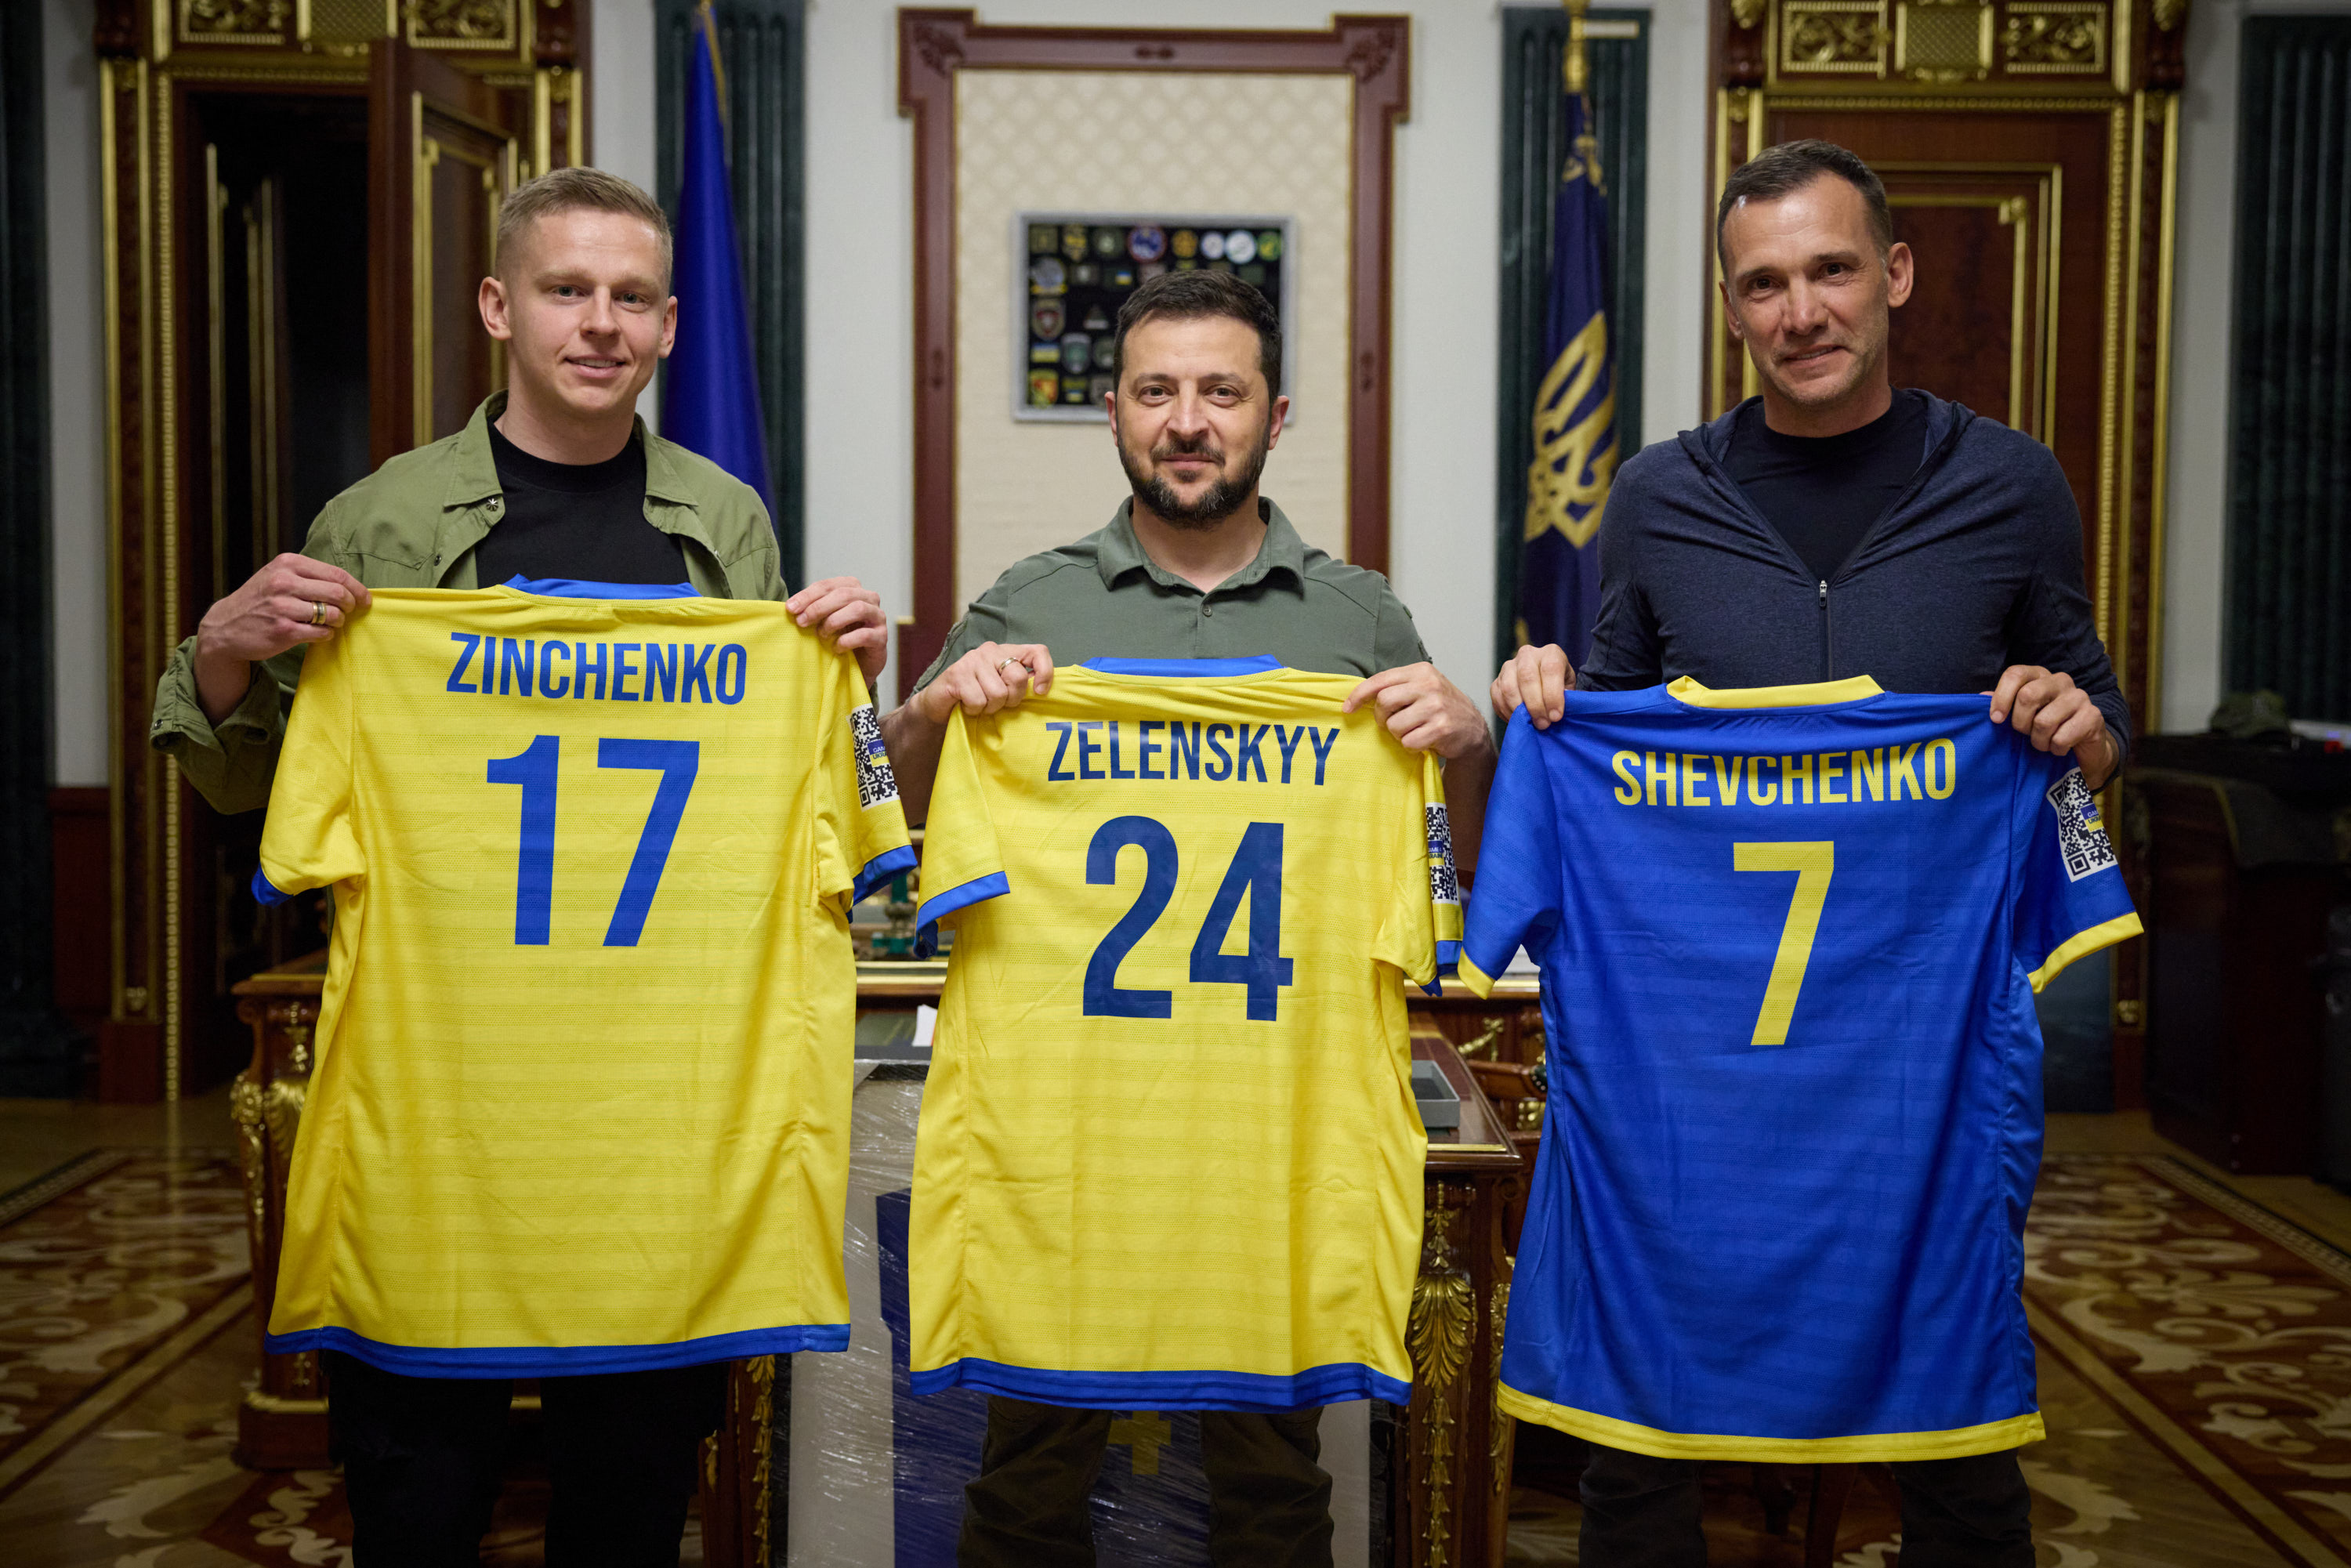 Die Spieler posieren mit Präsident Selenskyj, während sie Pläne für die Spendenaktion bekannt geben